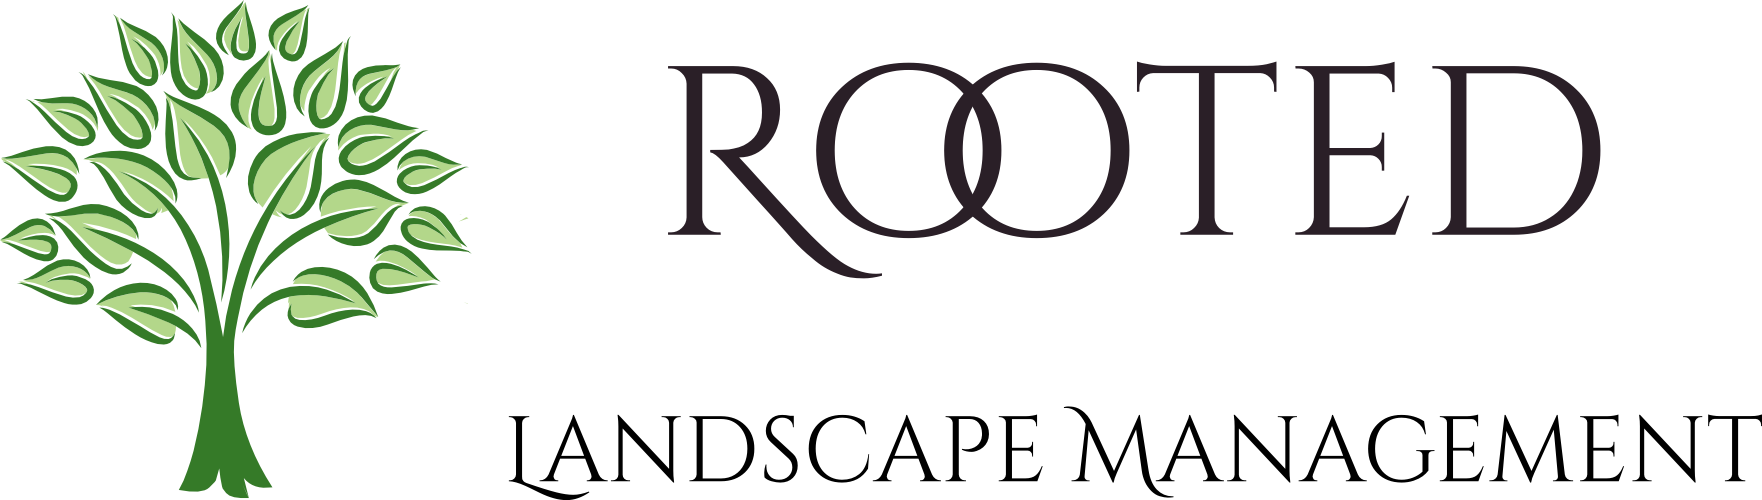 Rooted Landscape Management, LLC Logo